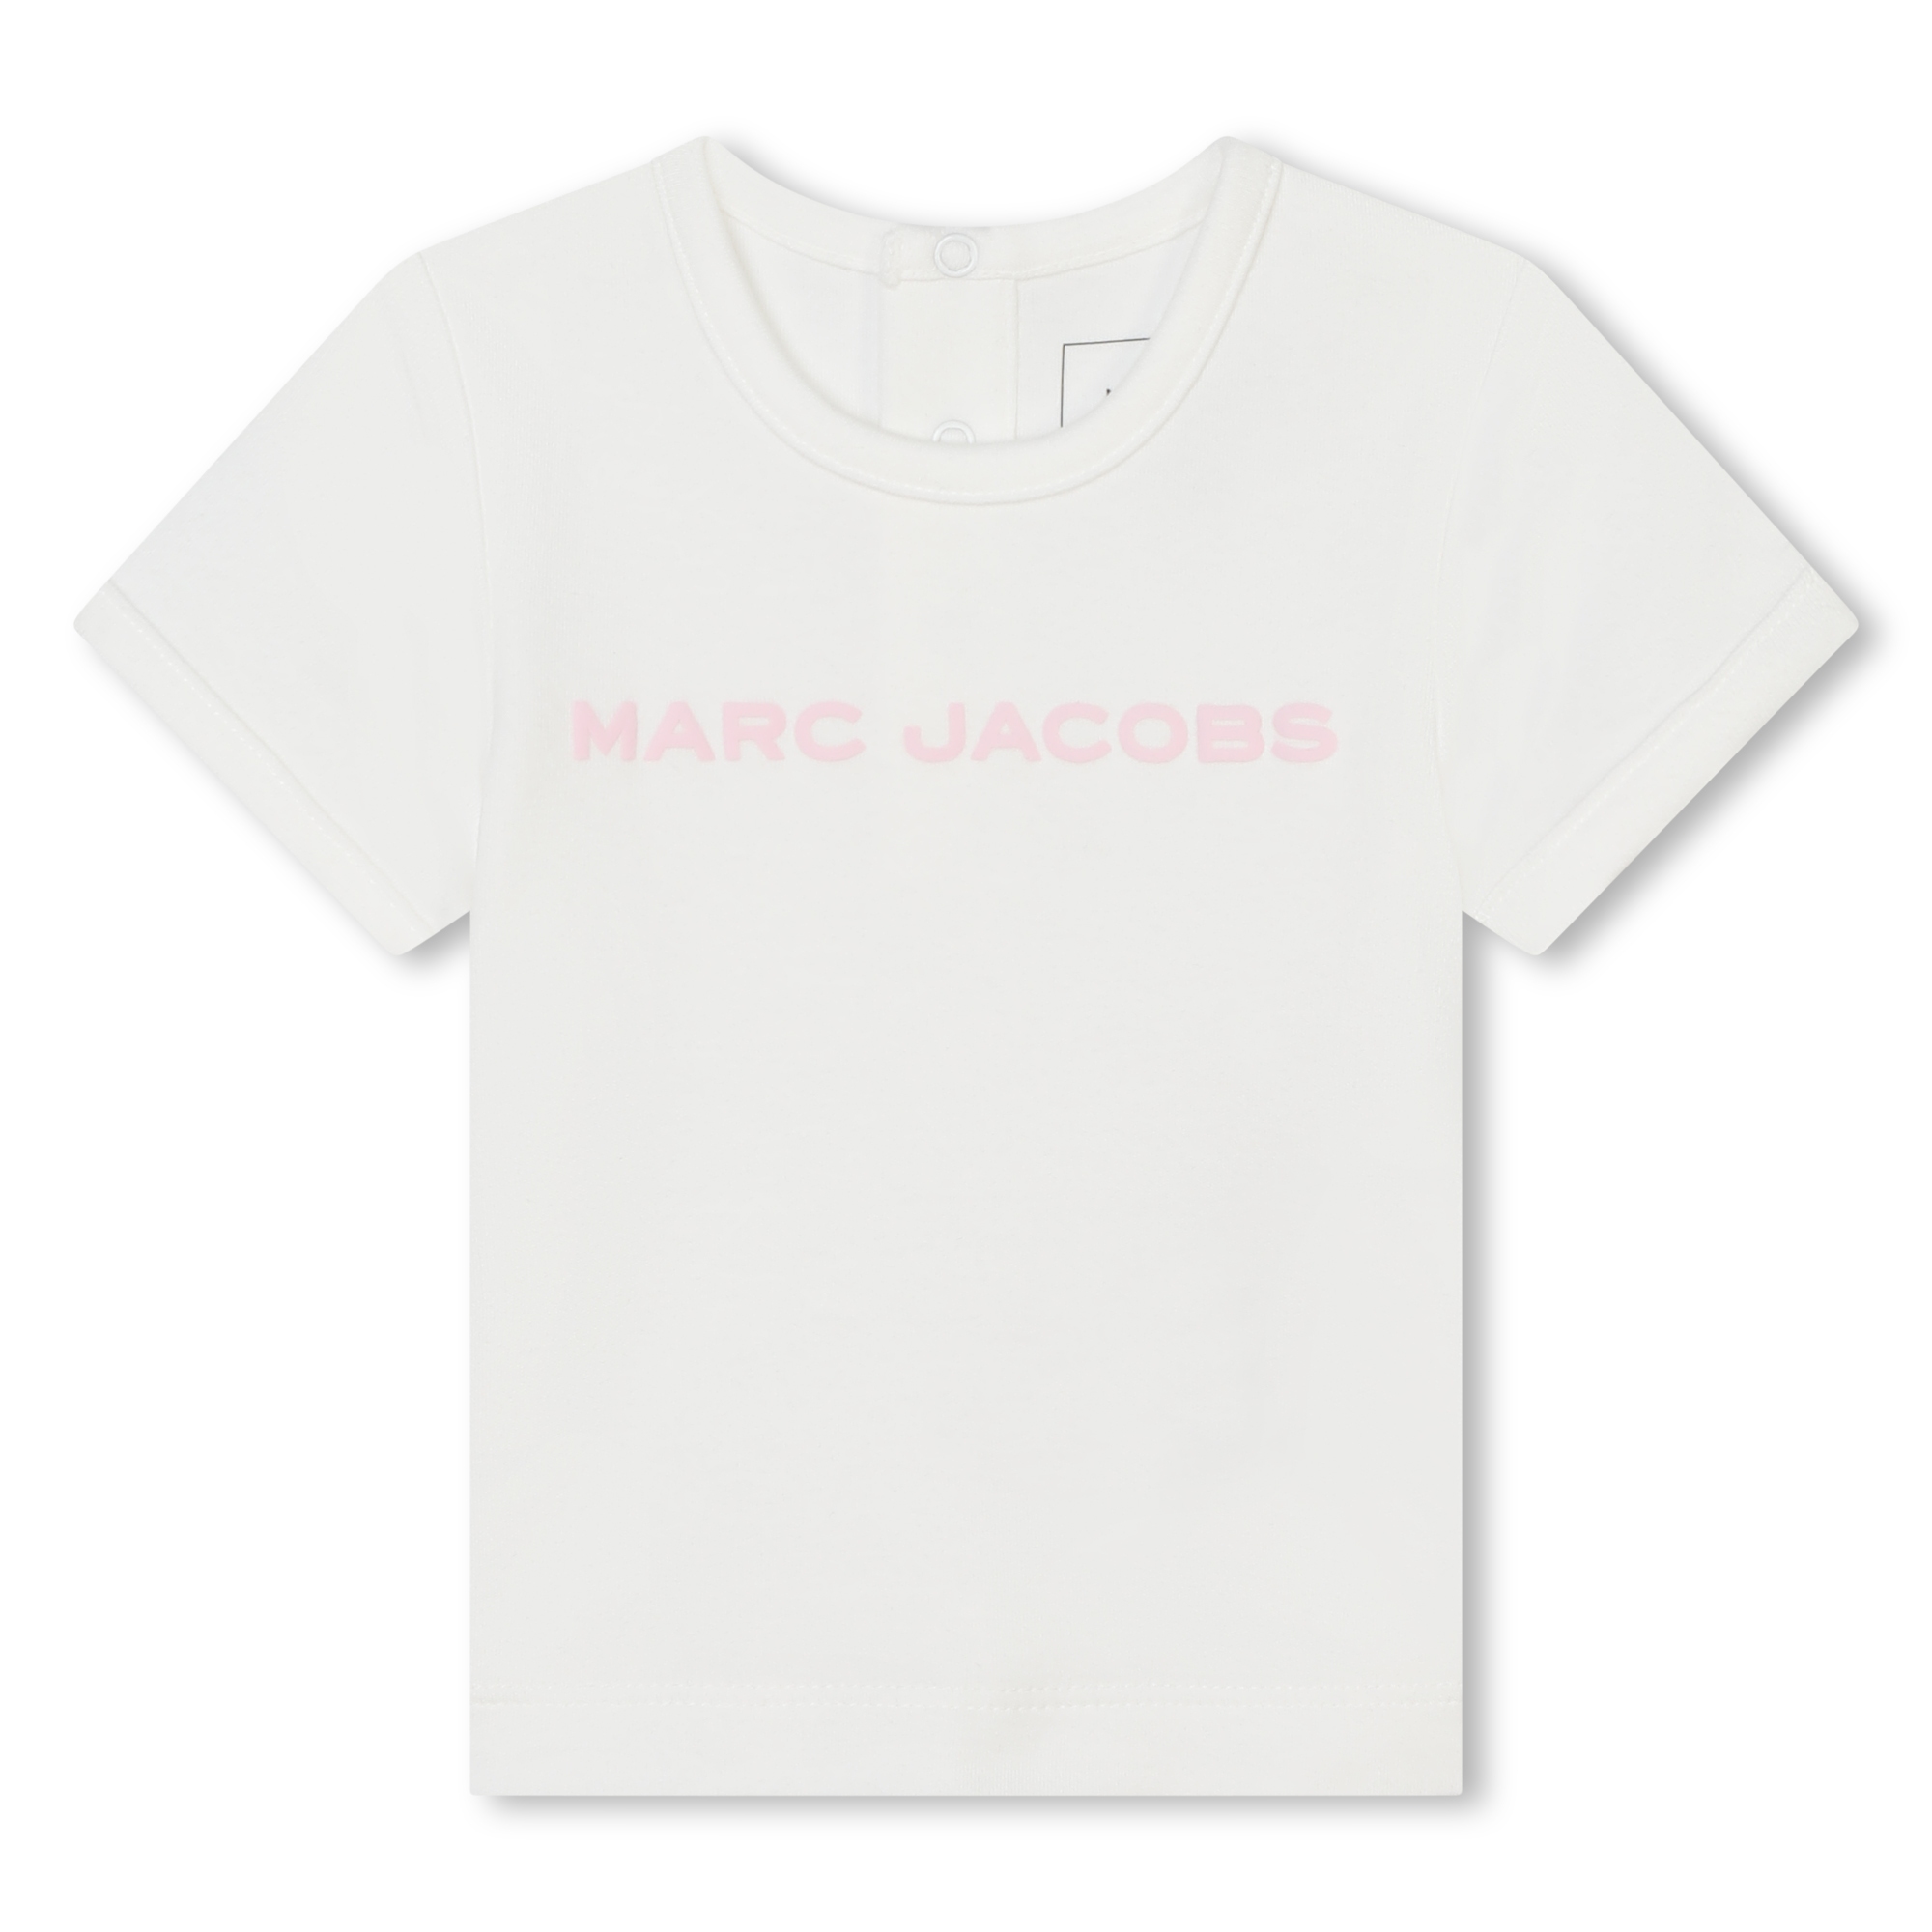 Baumwoll-T-Shirt und -Shorts MARC JACOBS Für UNISEX